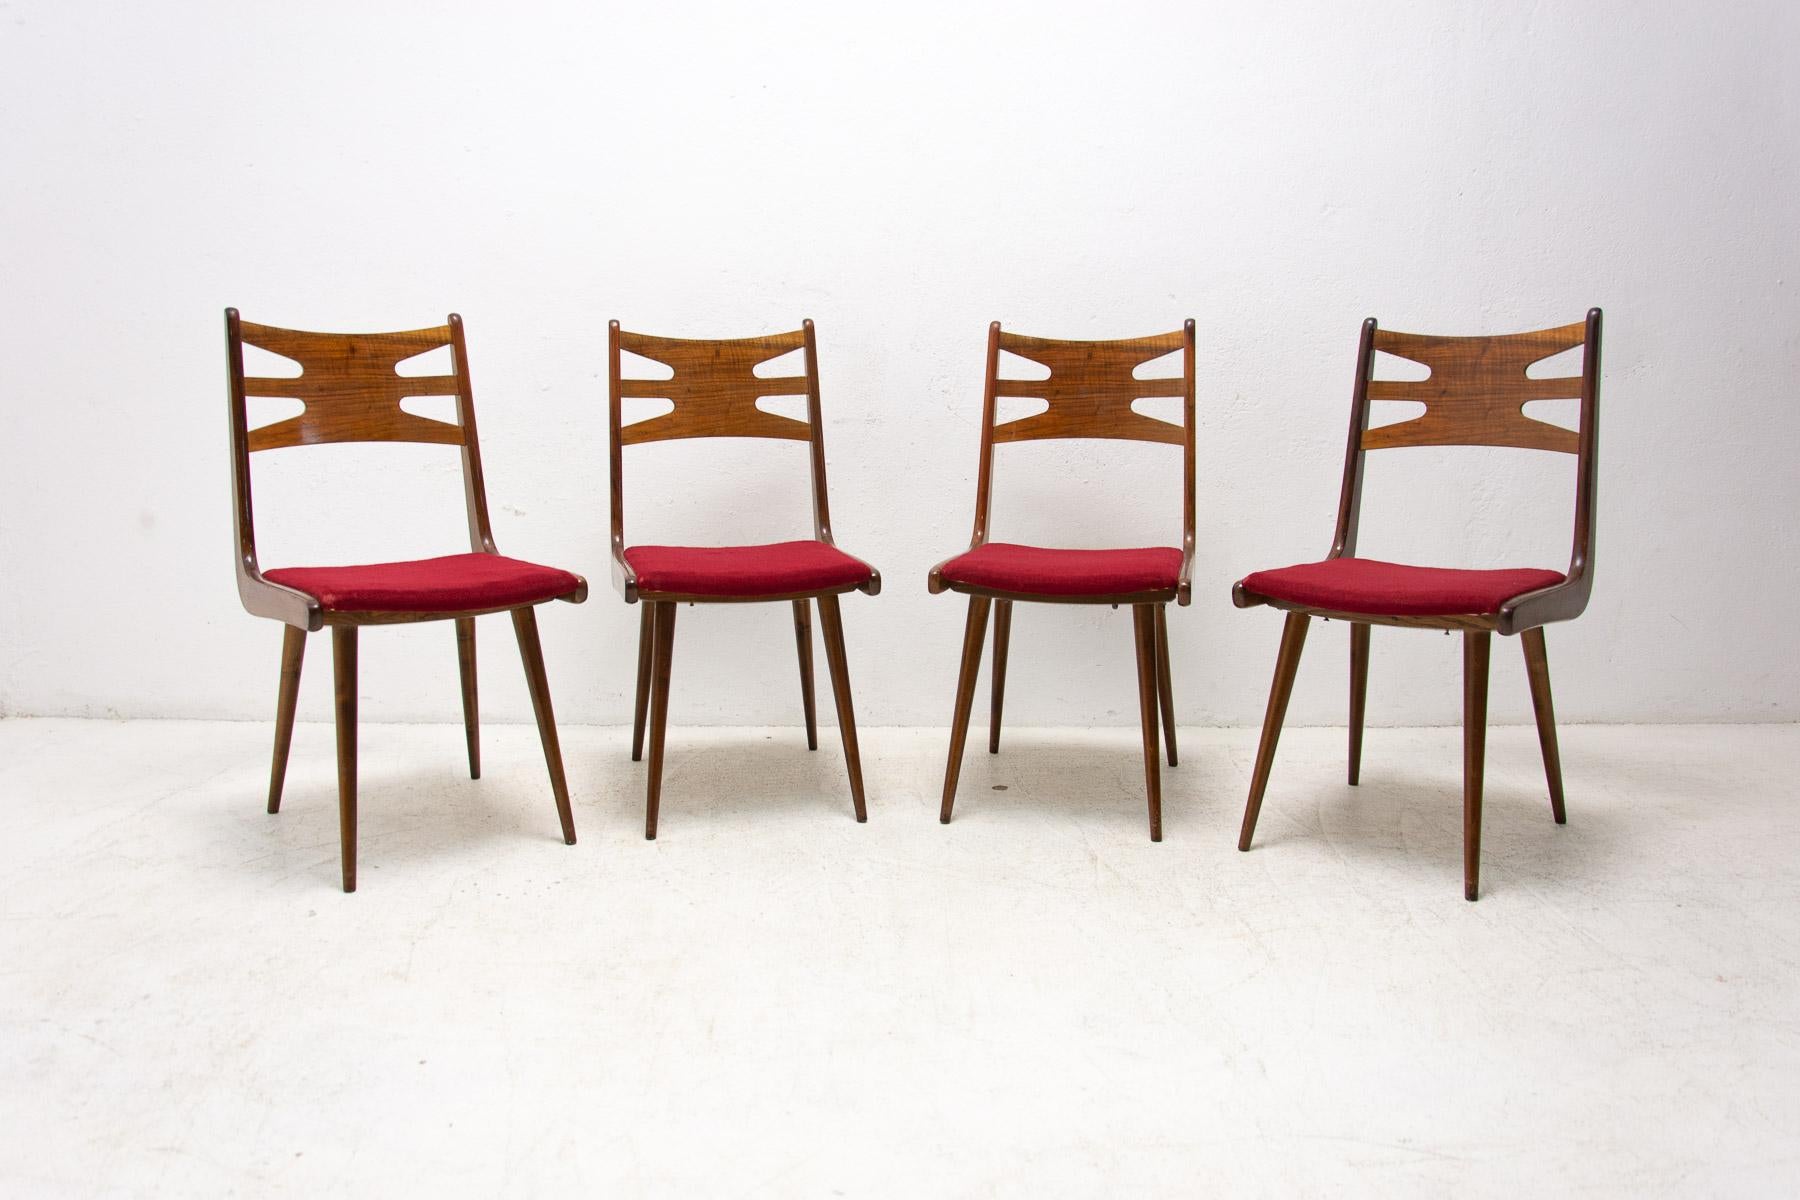 Ces magnifiques chaises de salle à manger Vintage ont été fabriquées dans l'ancienne Tchécoslovaquie dans les années 1970.

Il s'agit très probablement de la société TON - le successeur de Thonet en Tchécoslovaquie.

Ils se caractérisent par un